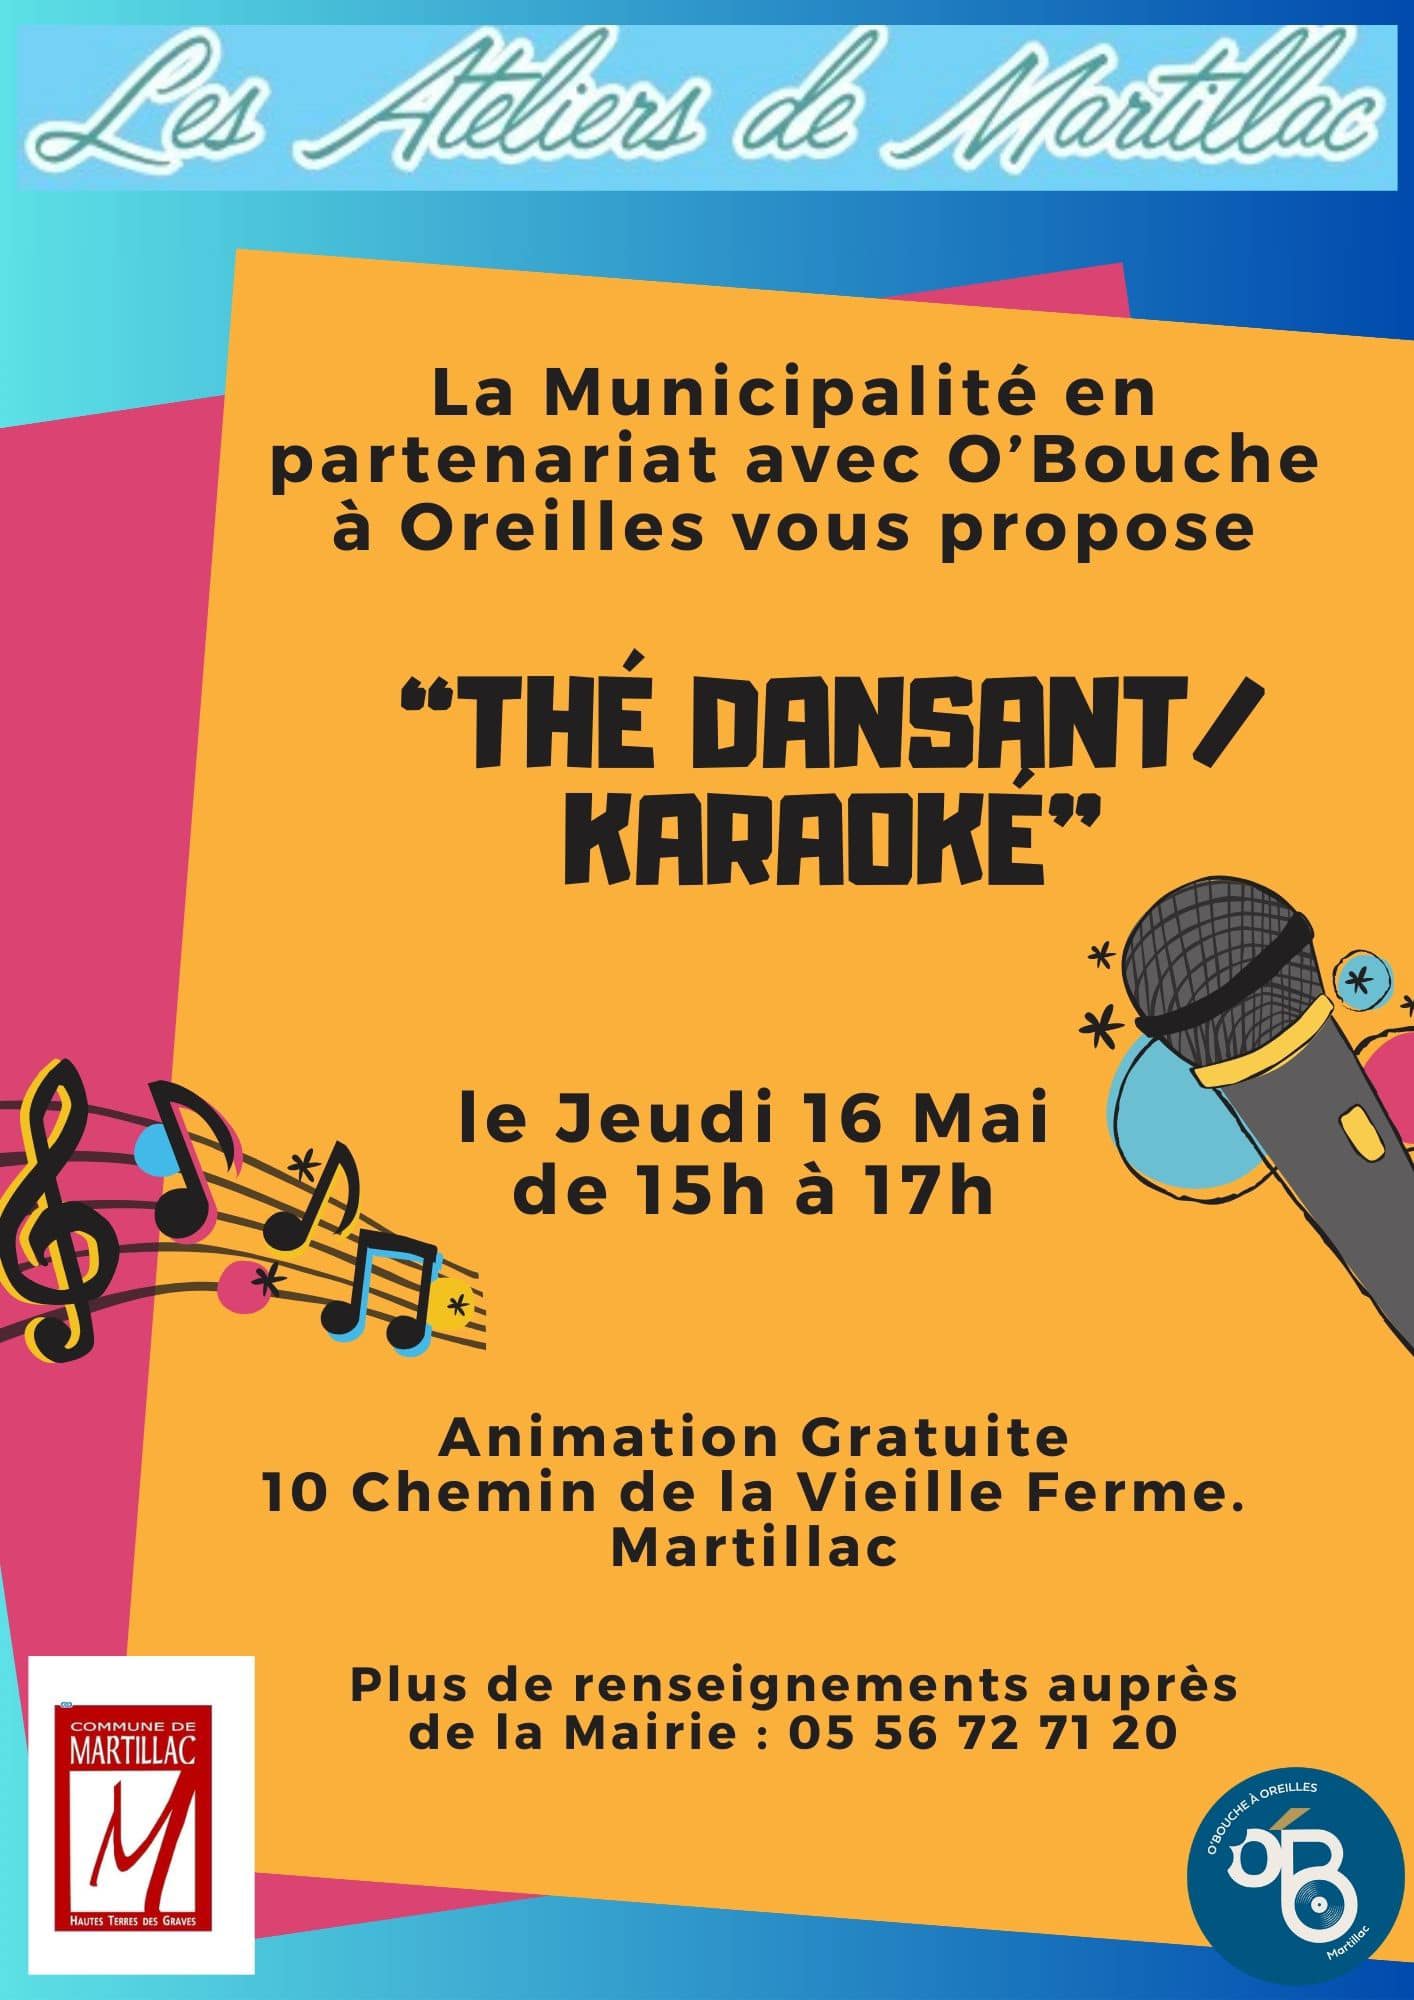 Les Ateliers de Martillac "Thé Dansant/Karaoké".